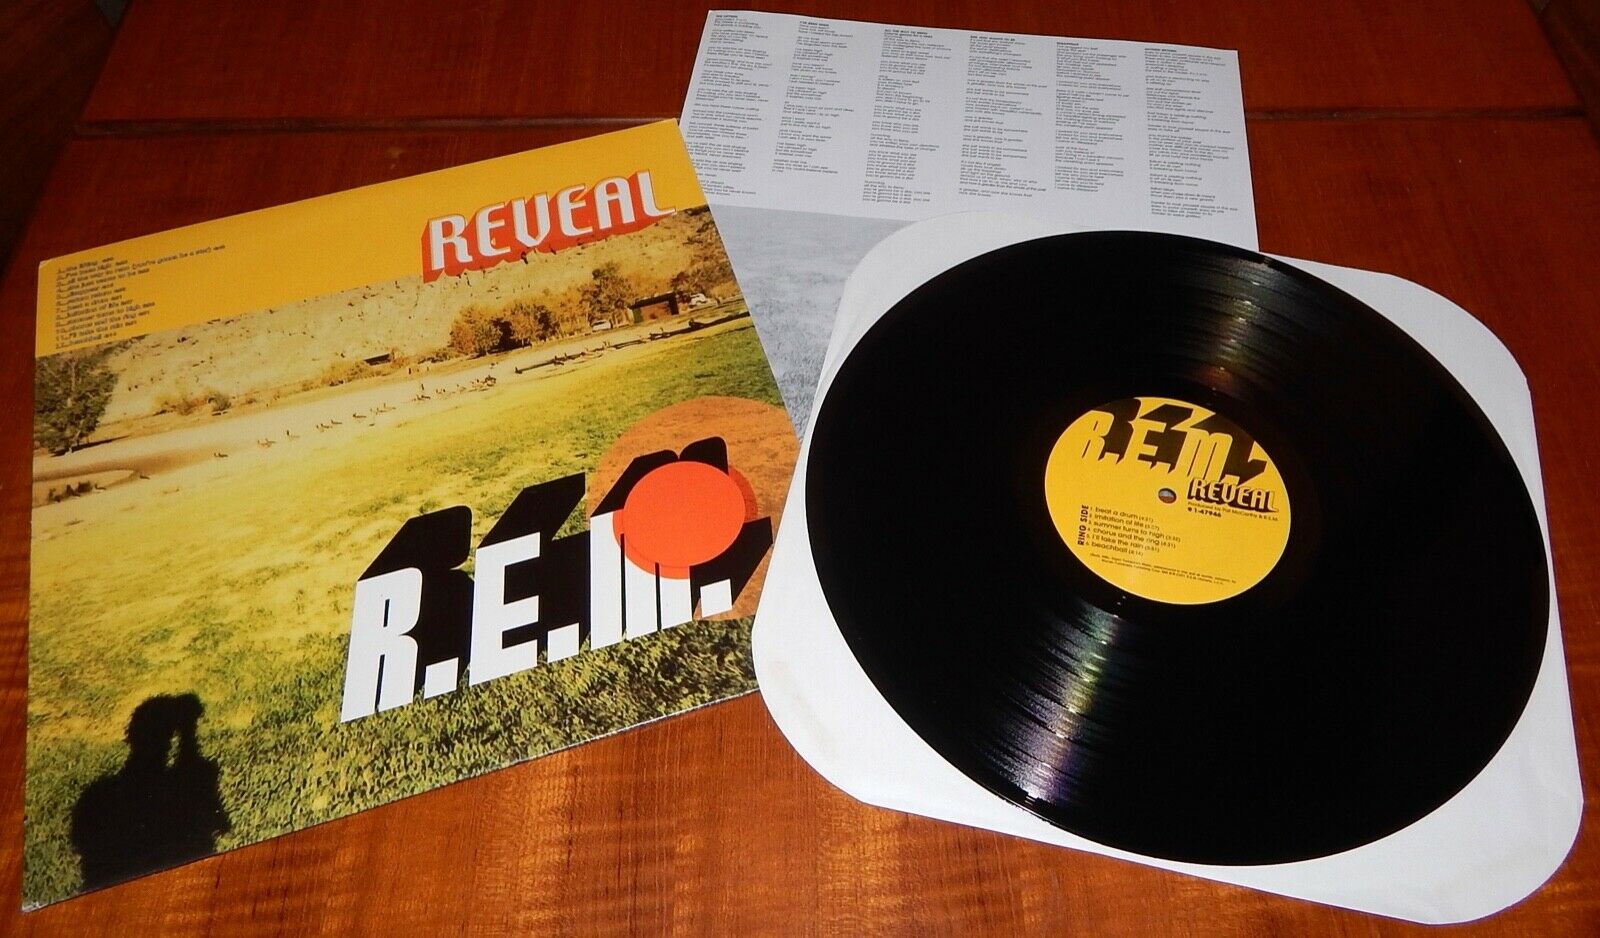  Original Press 2001 R.E.M.  Reveal  Vinyl 12 LP  Alternative Rock Promo REM 33 - auction details